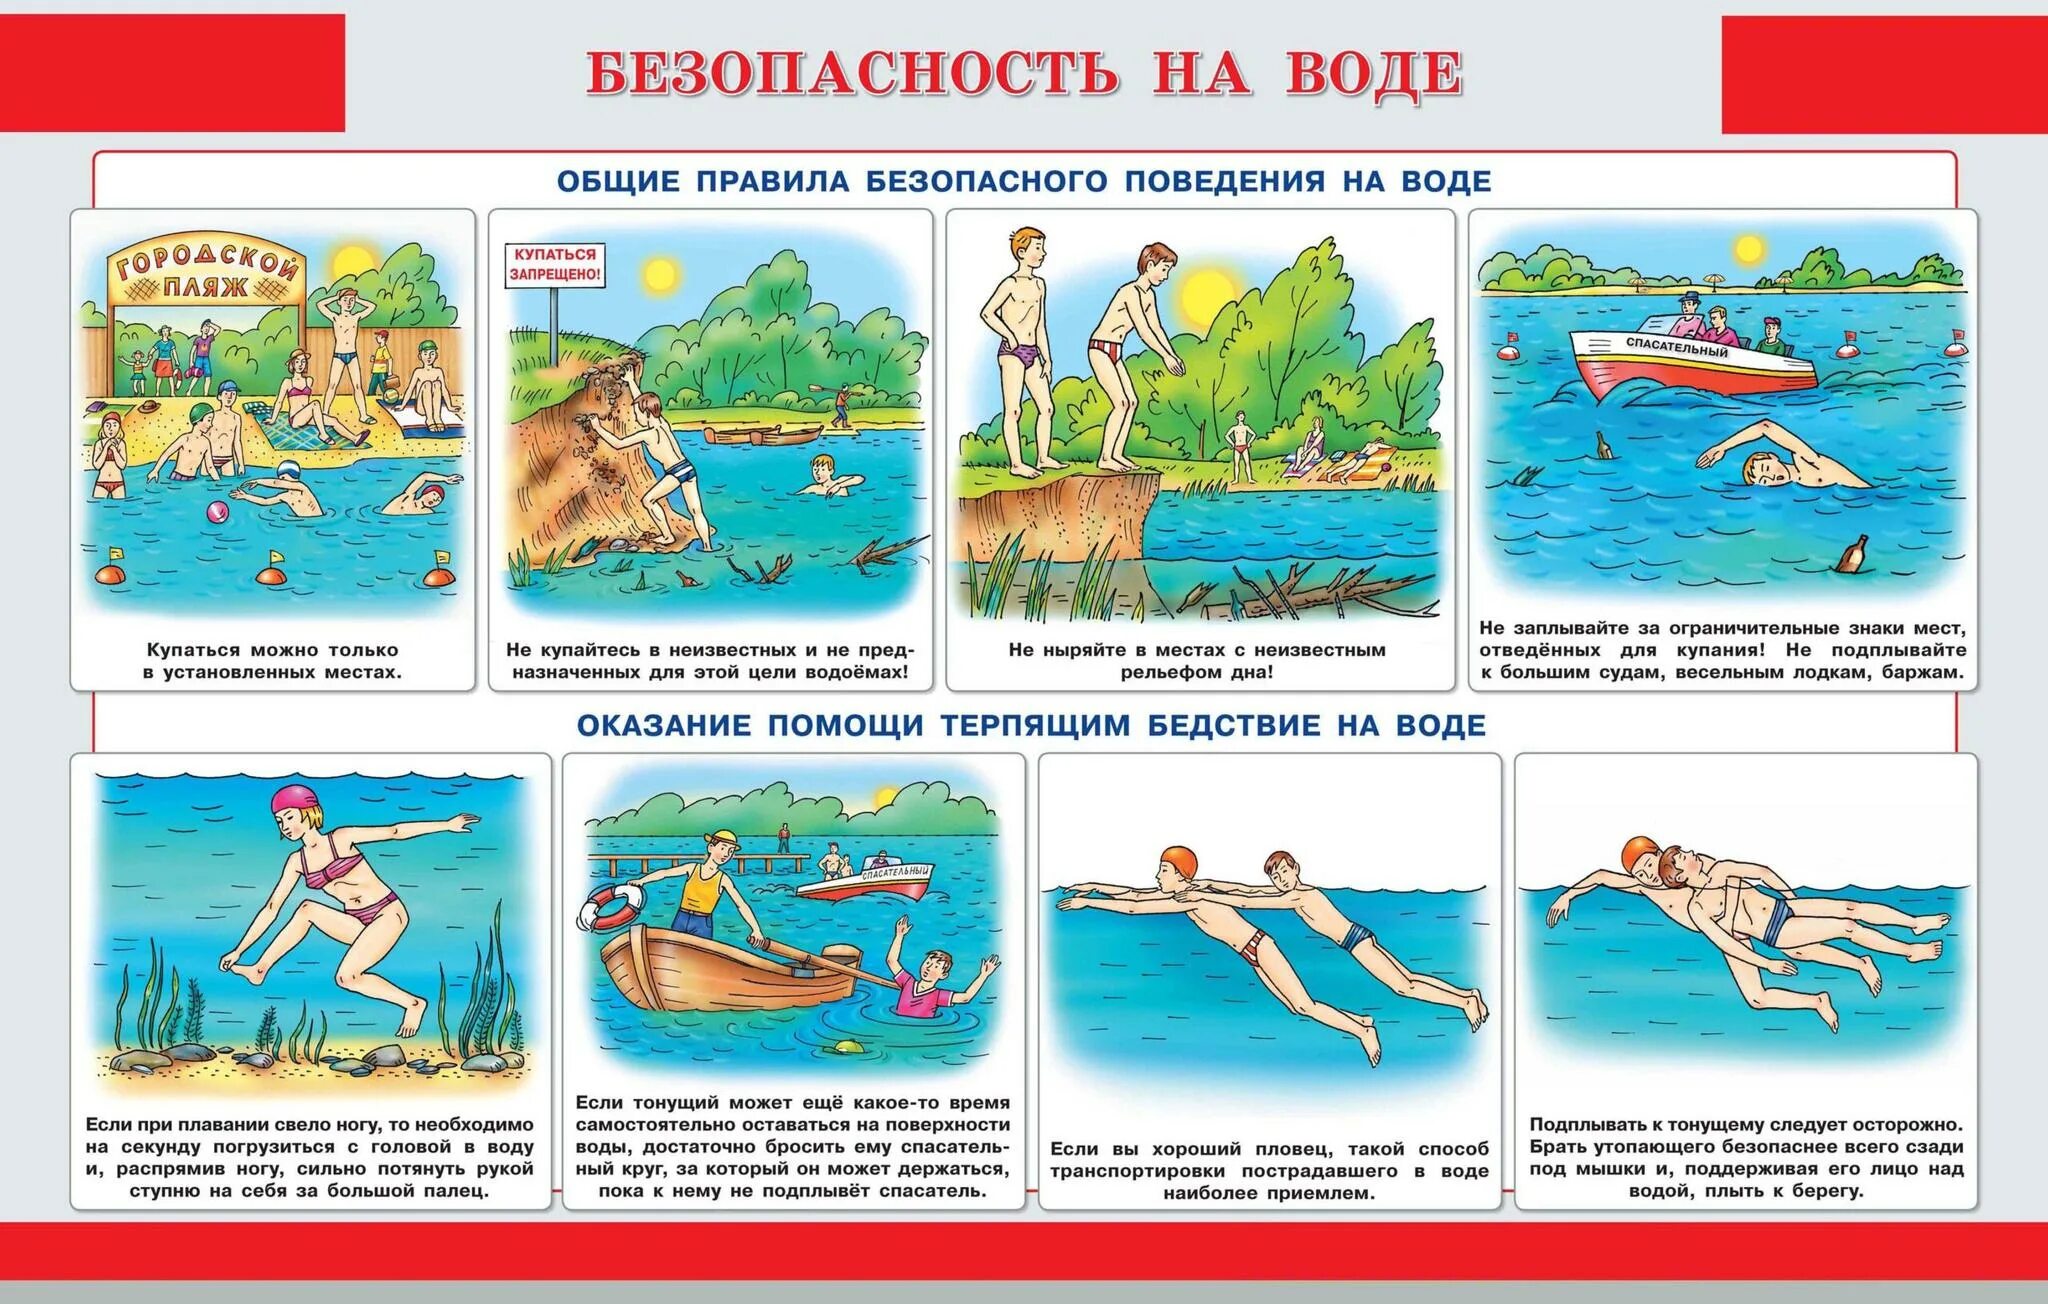 Памятка для детей по безопасному поведению на воде. Правила безопасности на воде летом для детей. Правила безопасности на воде для детей в картинках. Безопасное поведение на водоемах летом.